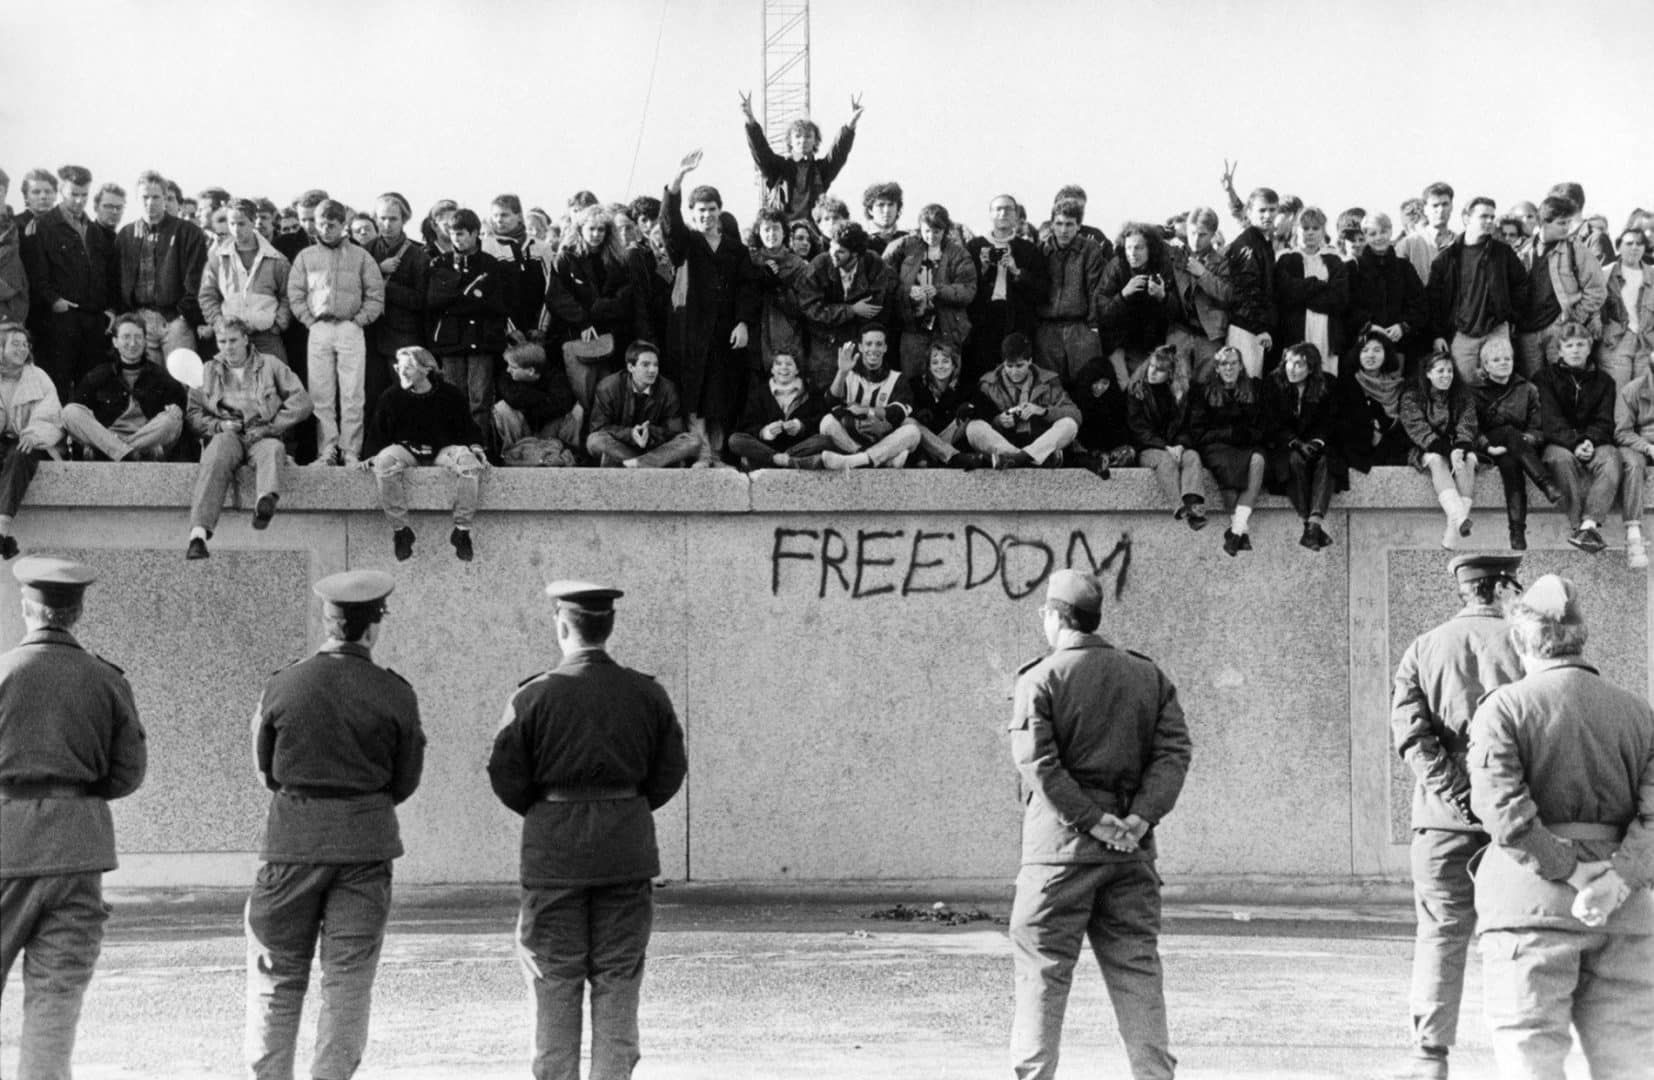 Muro de Berlim - História, construção, características e como terminou